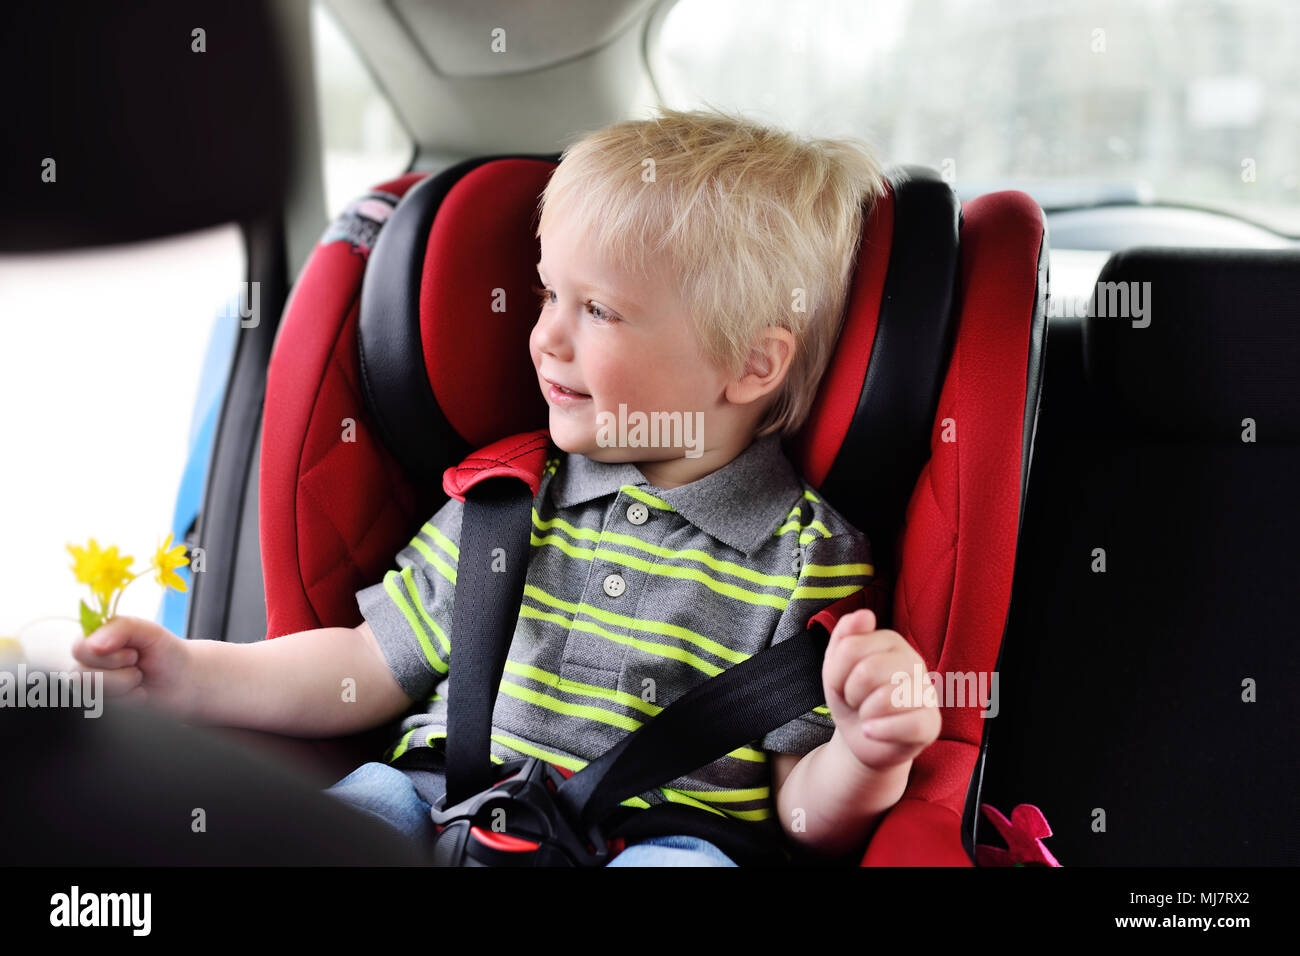 Porträt eines jungen Kindes von einem Jungen mit blonden Haaren in einem kinder Autositz. Stockfoto